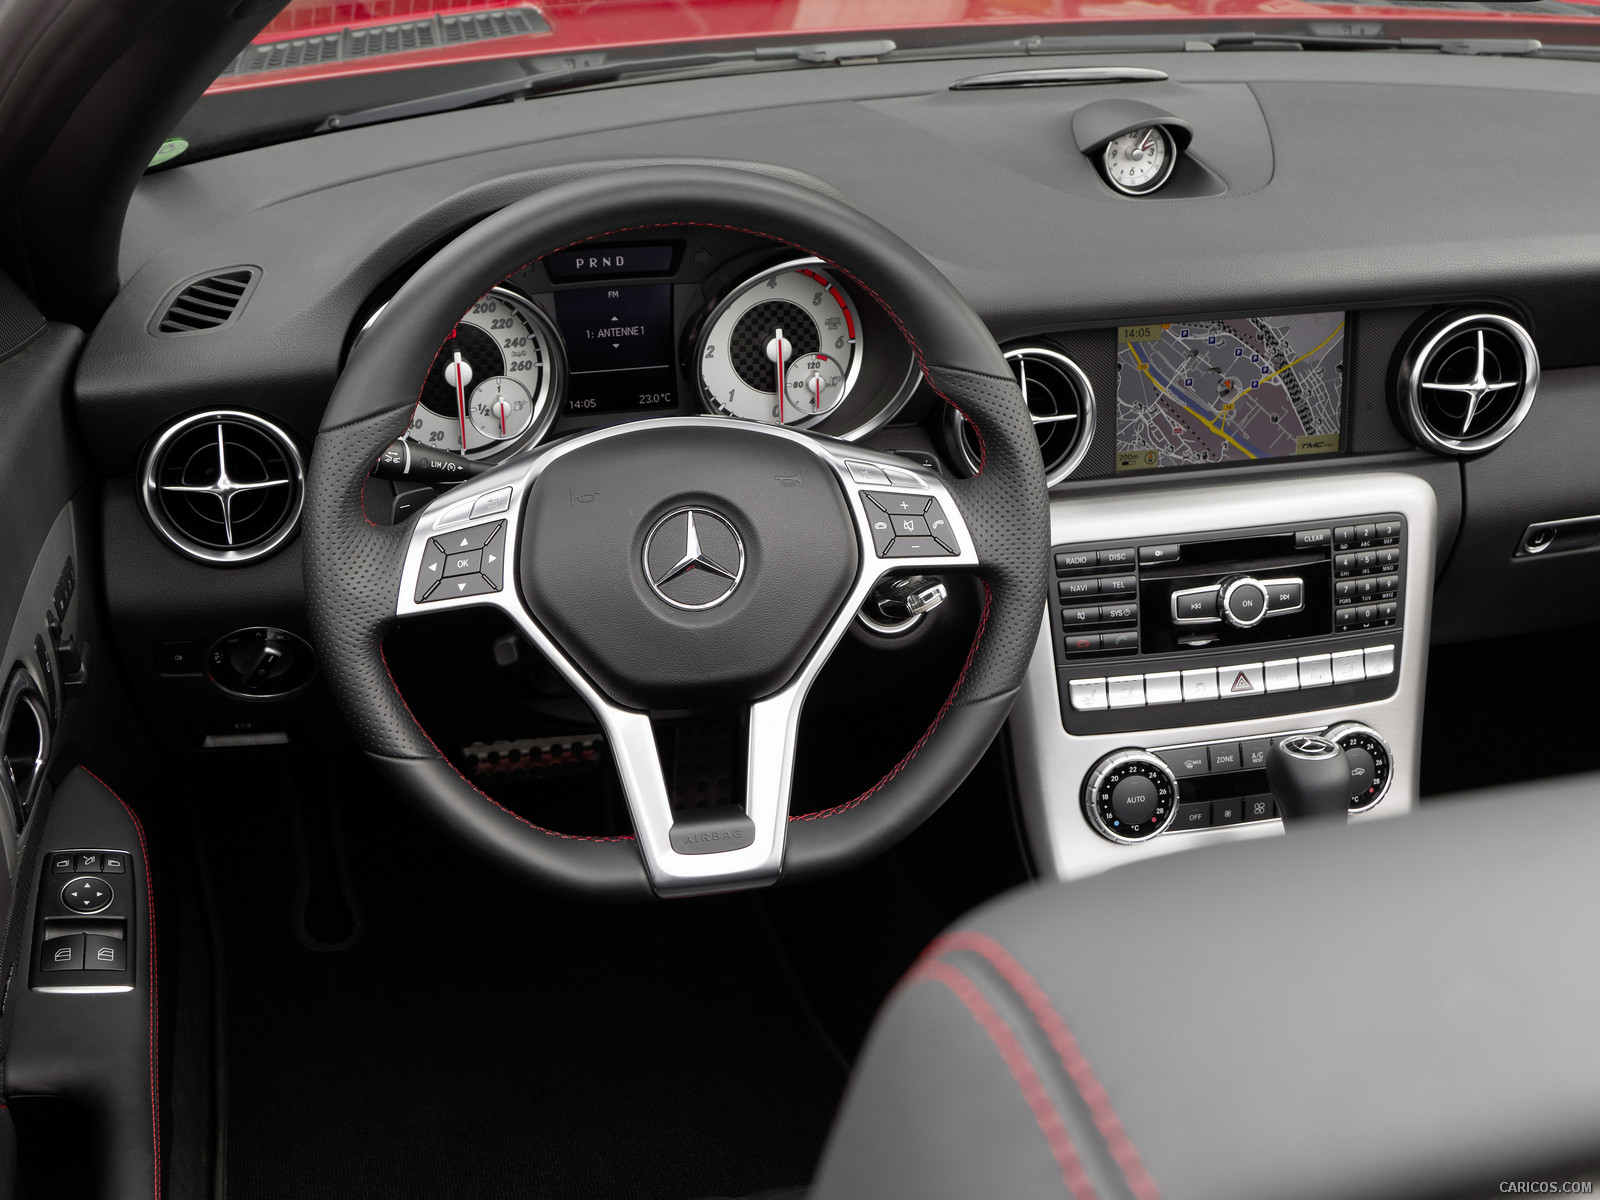 Mercedes-Benz SLK 250 CDI interior, #12 of 15